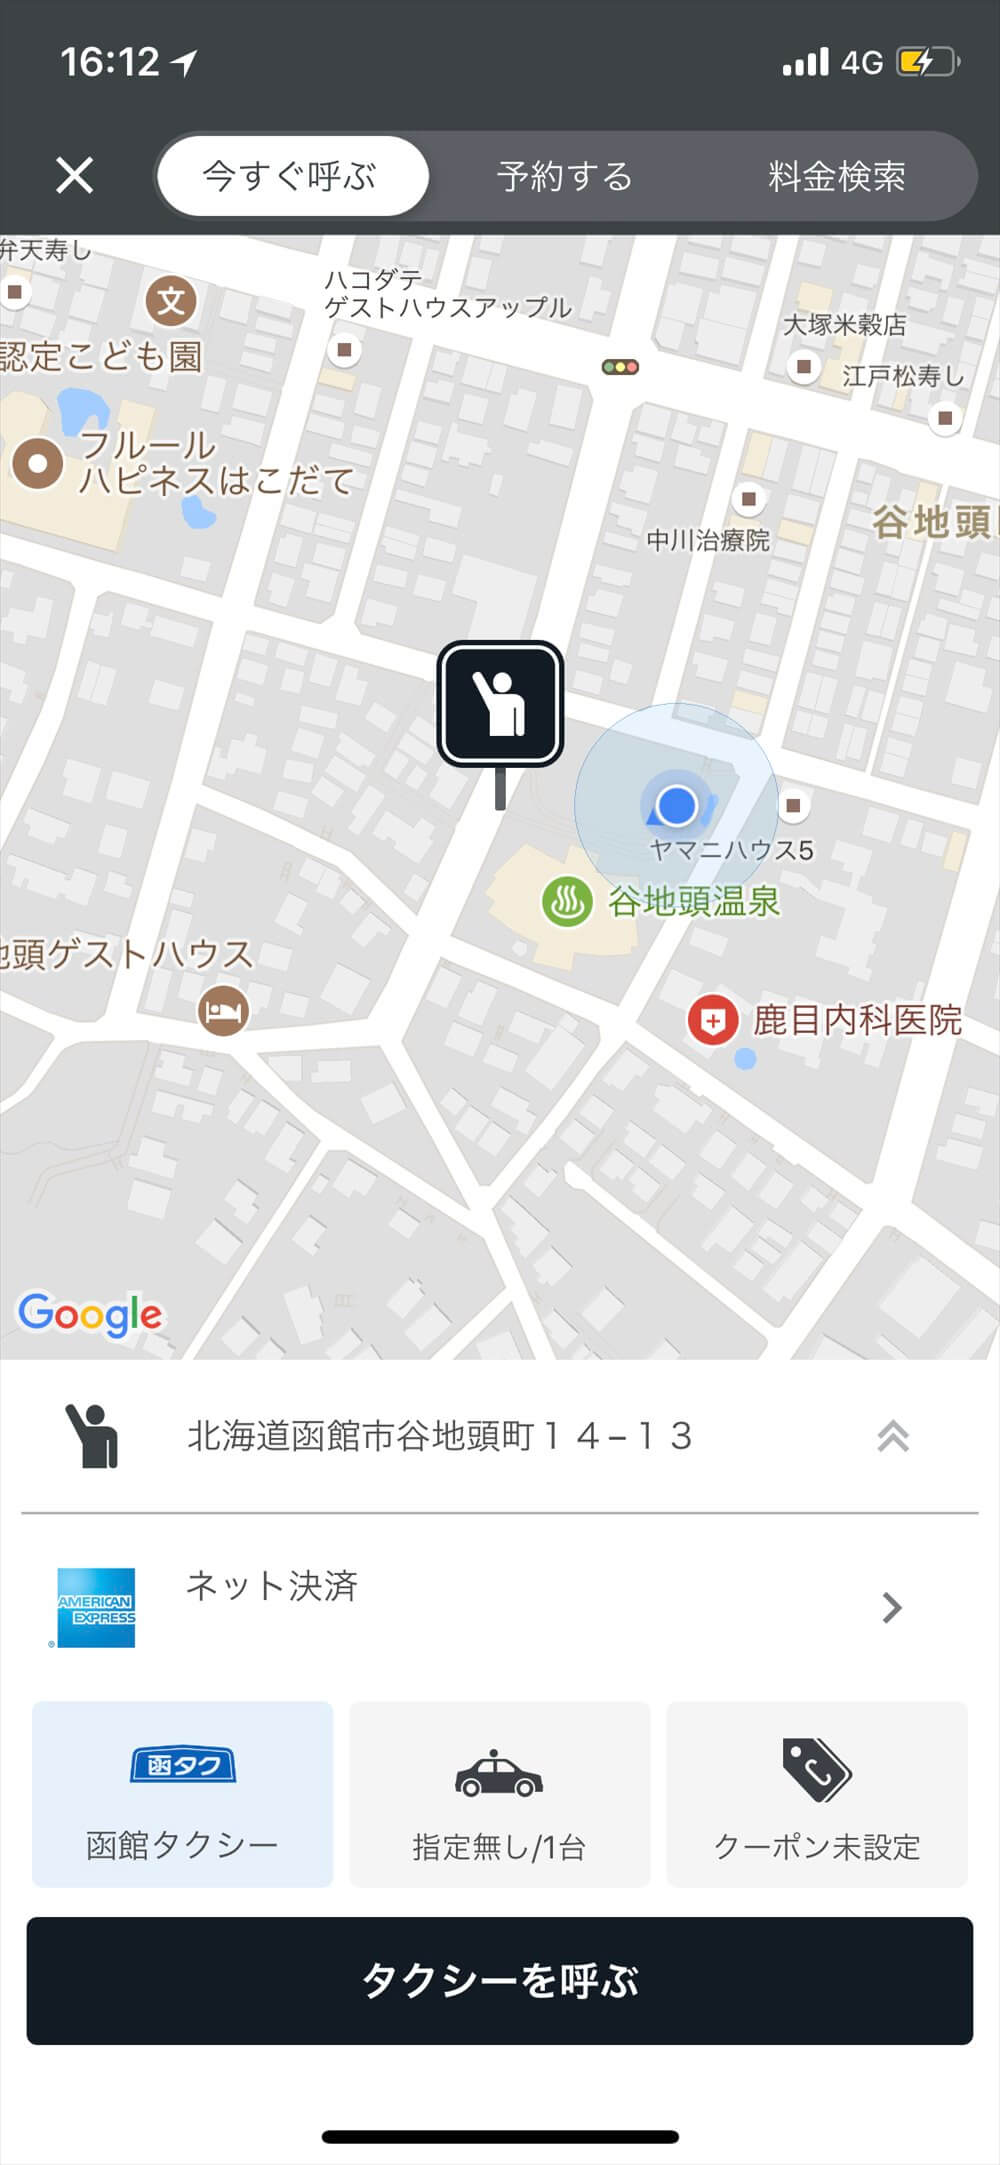 函館で全国タクシーで配車